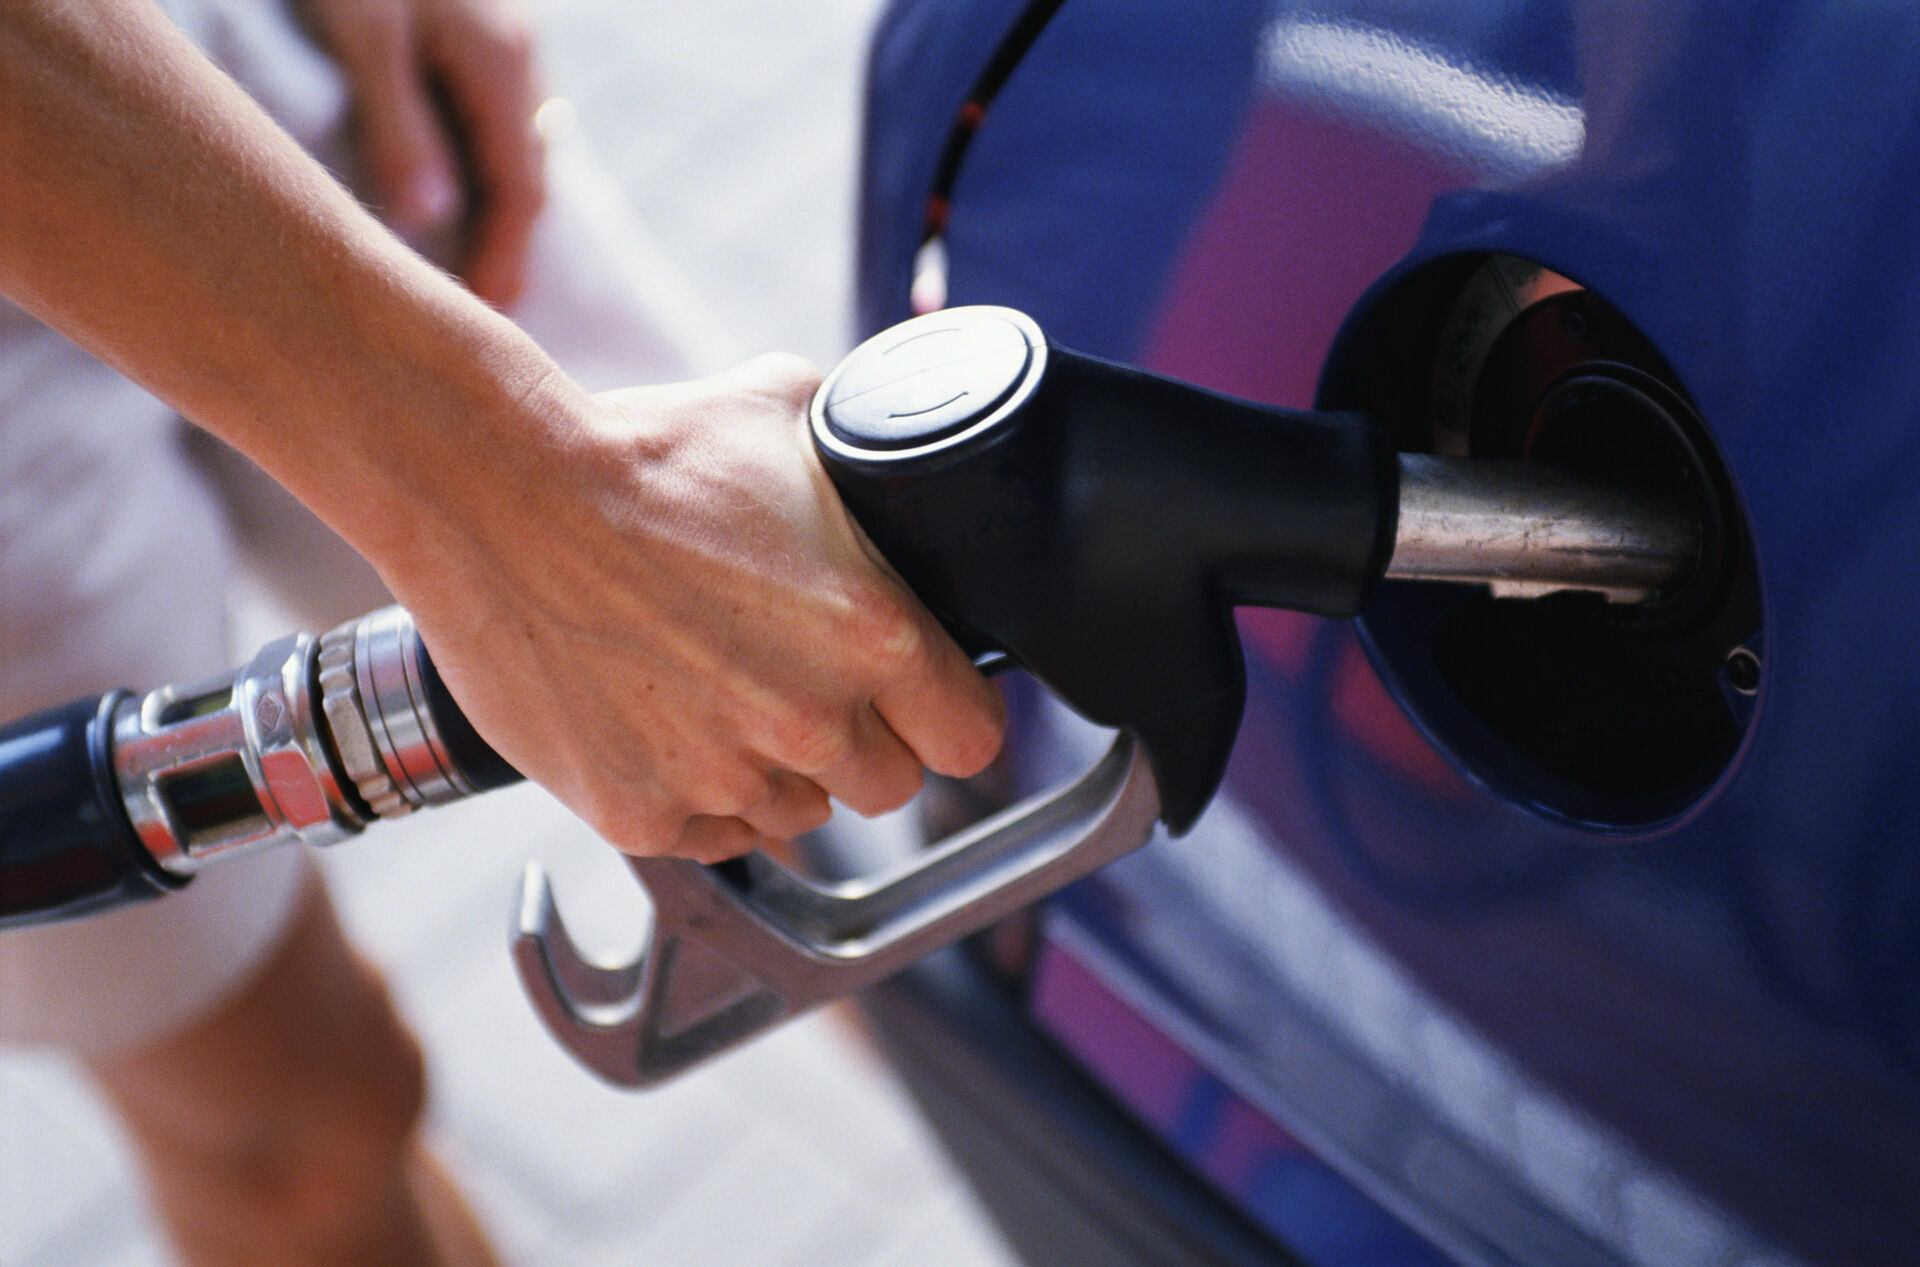 Независимый топливный союз назвал клеветой исследование о недоливе бензина